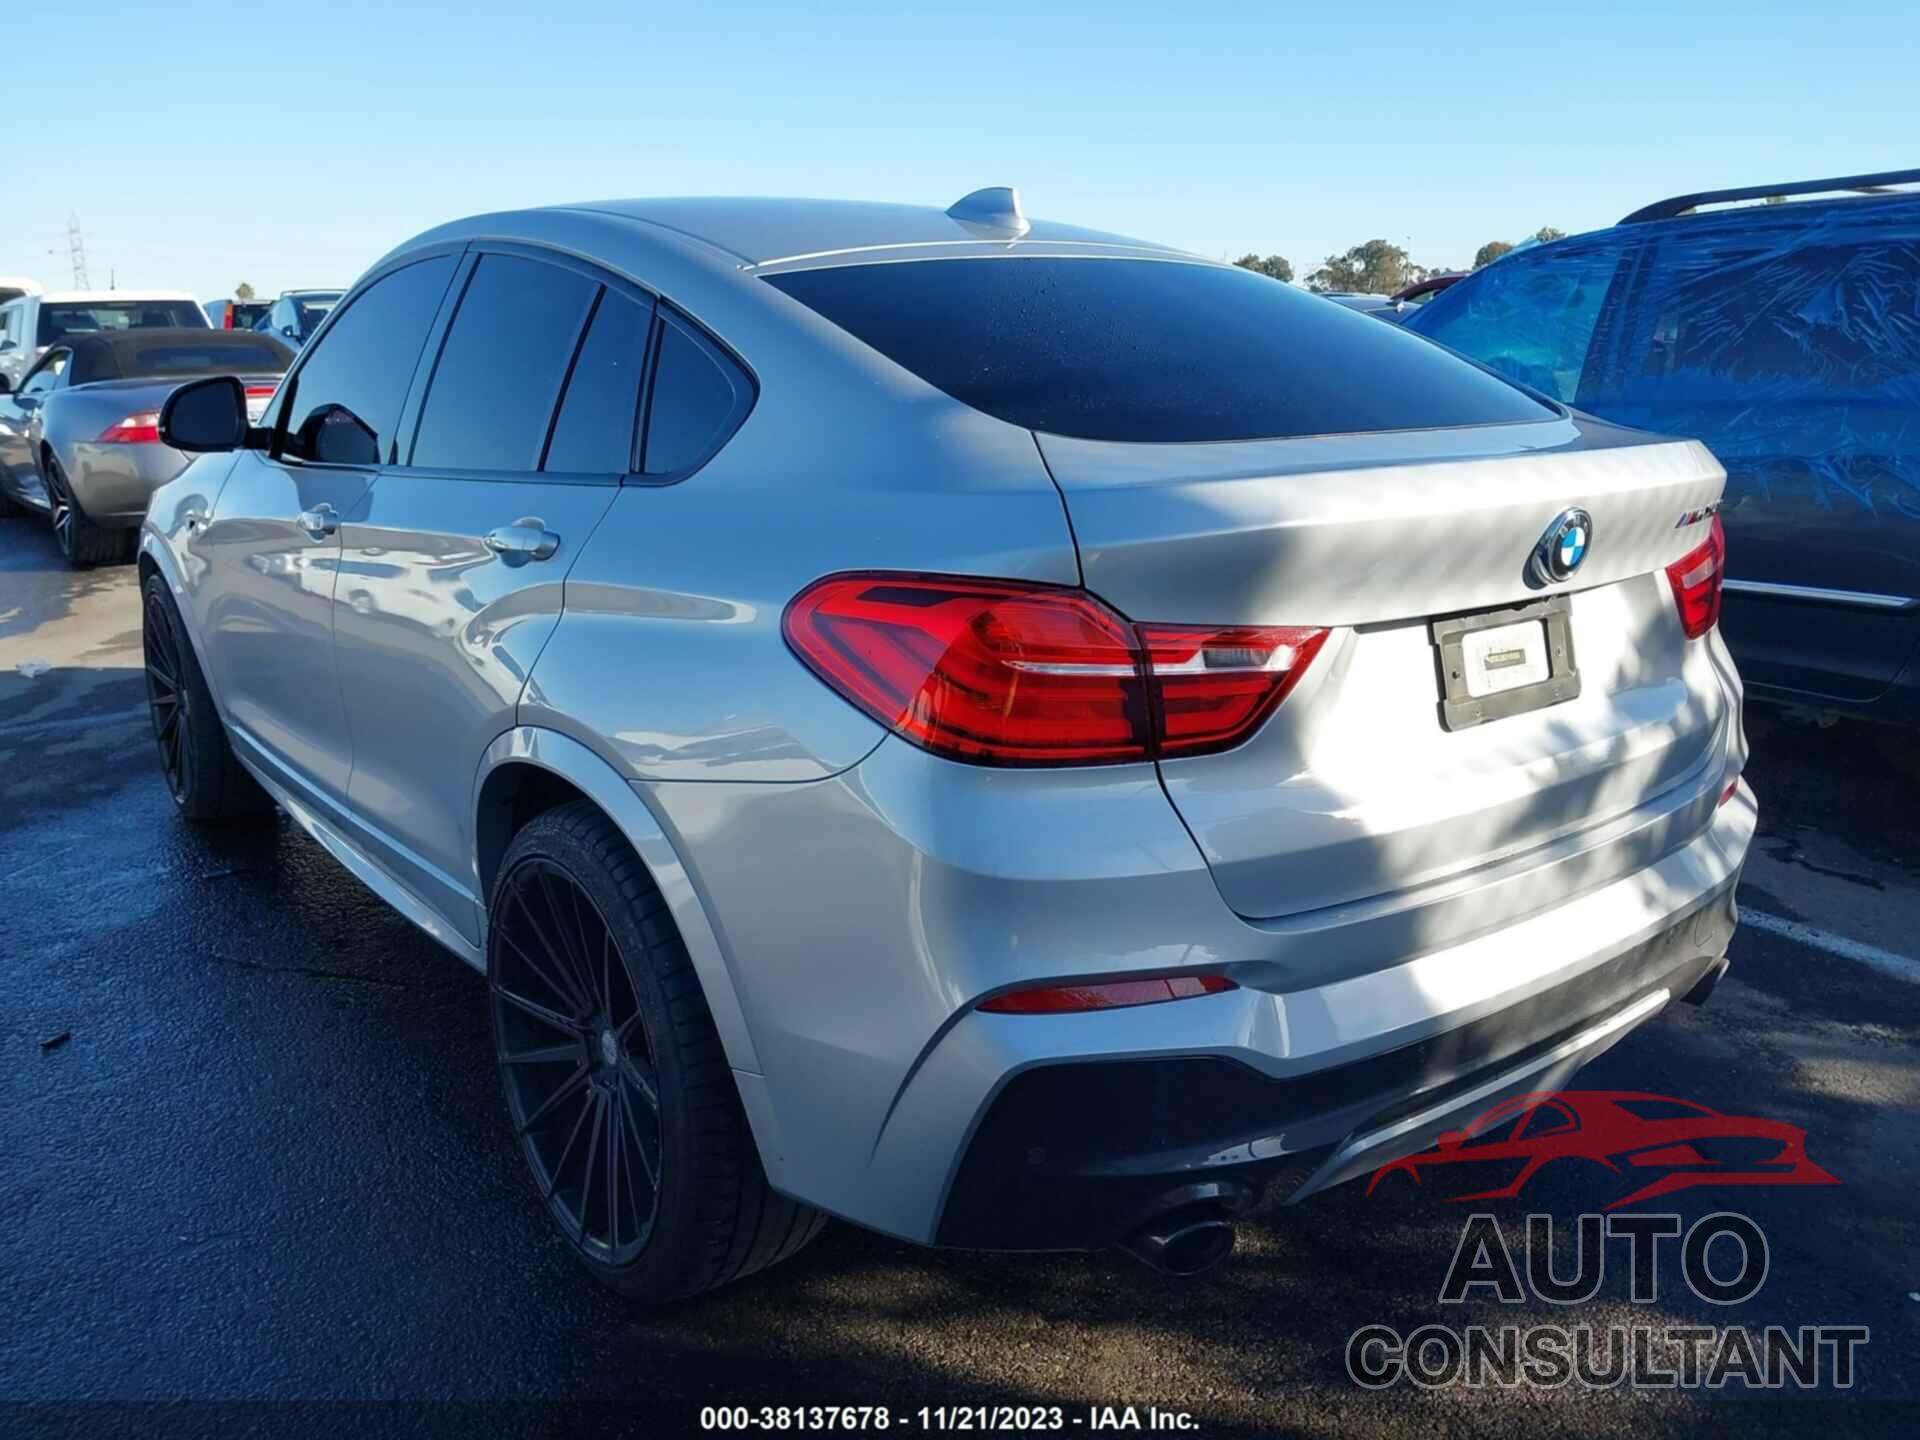 BMW X4 2018 - 5UXXW7C50J0W64182